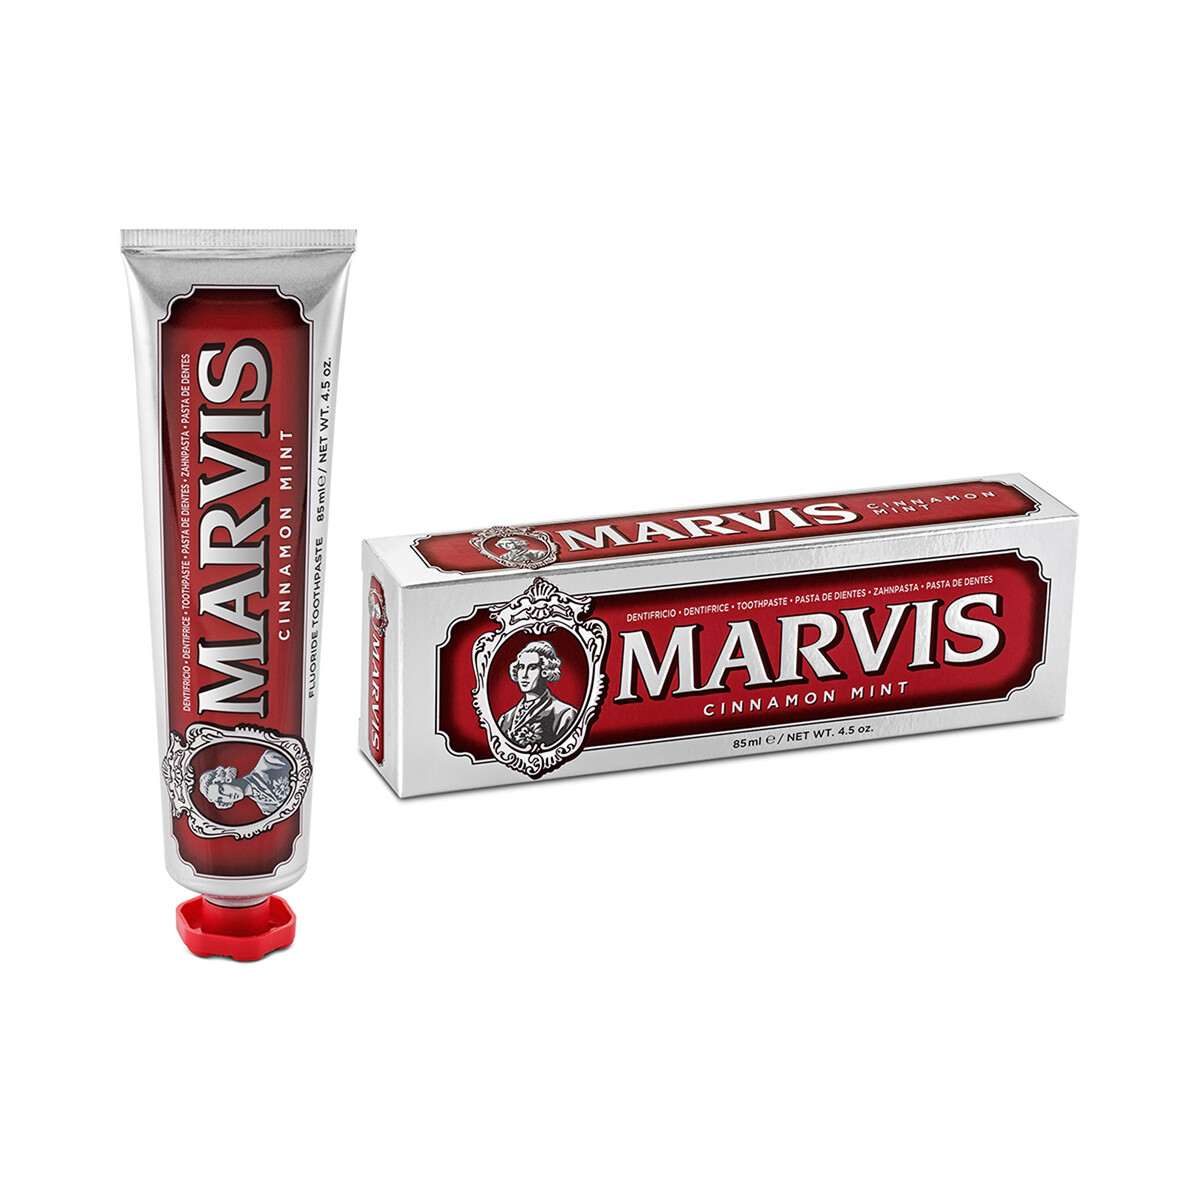 MARVIS Cinnamon Mint 85ml